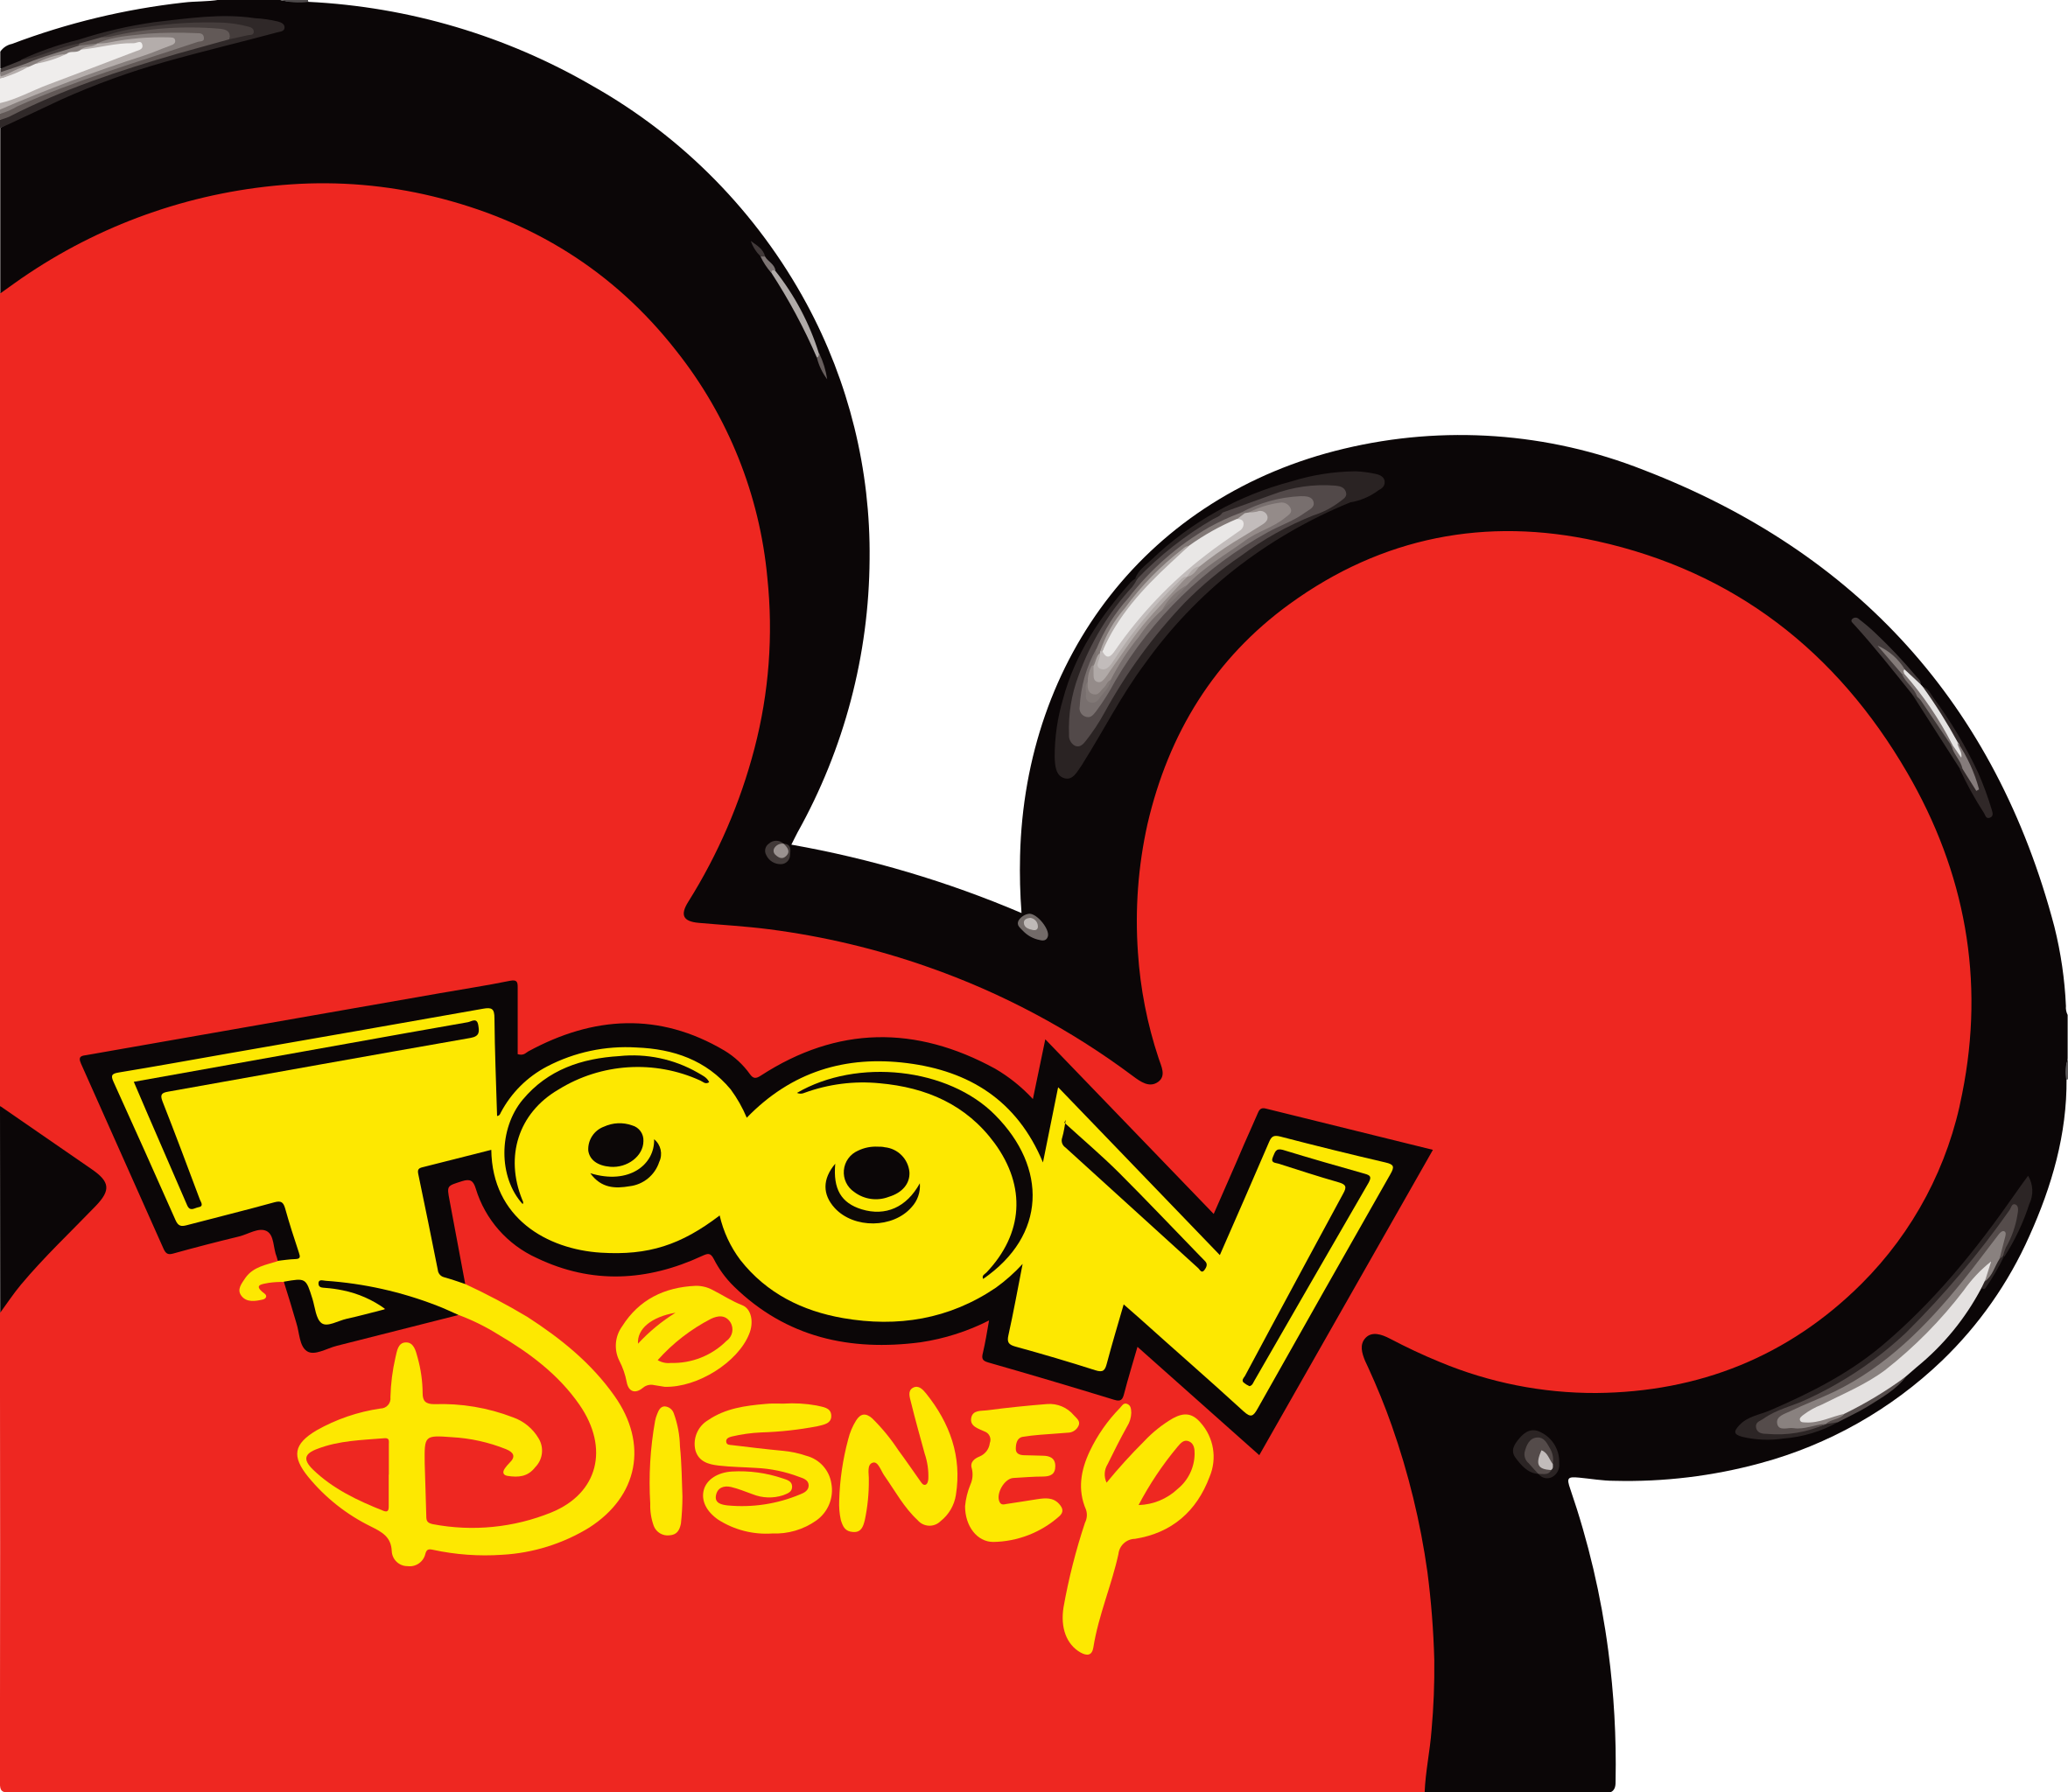 Toon Disney | Disney Wiki | Fandom